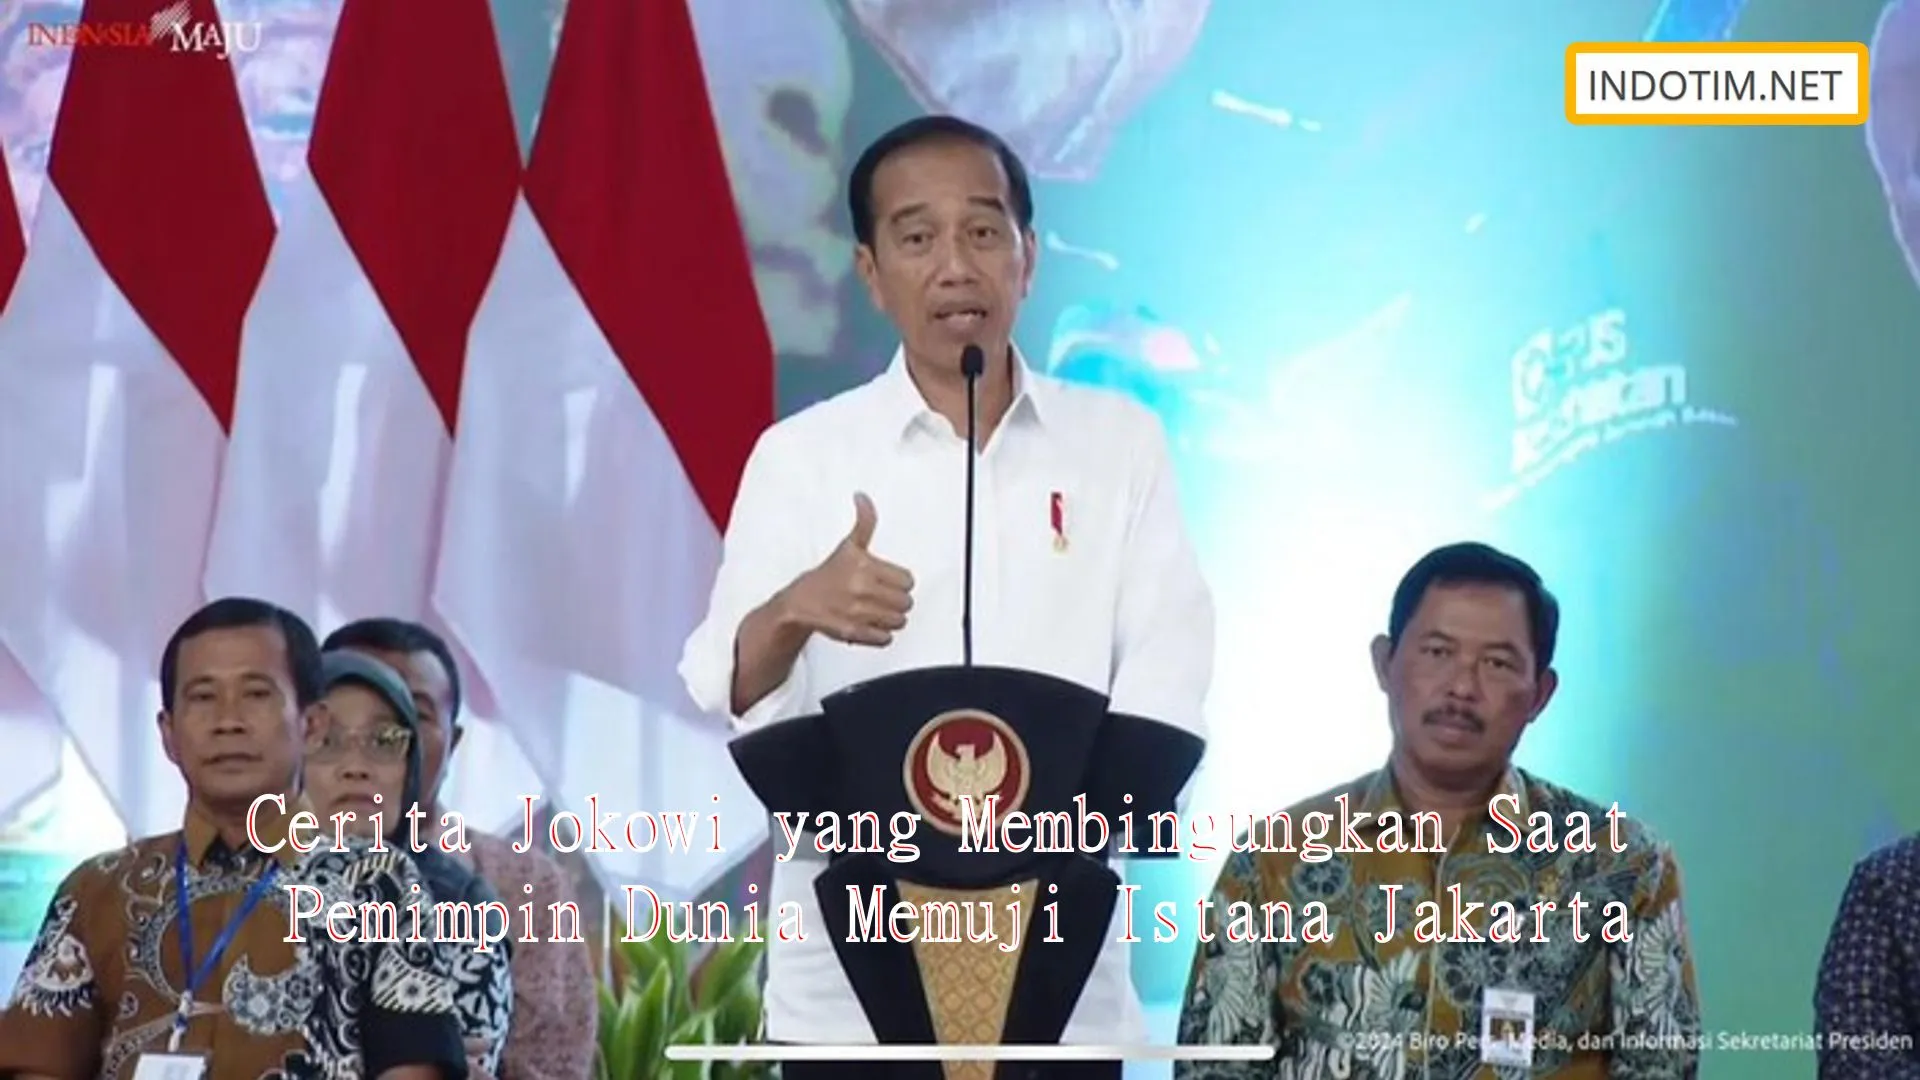 Cerita Jokowi yang Membingungkan Saat Pemimpin Dunia Memuji Istana Jakarta